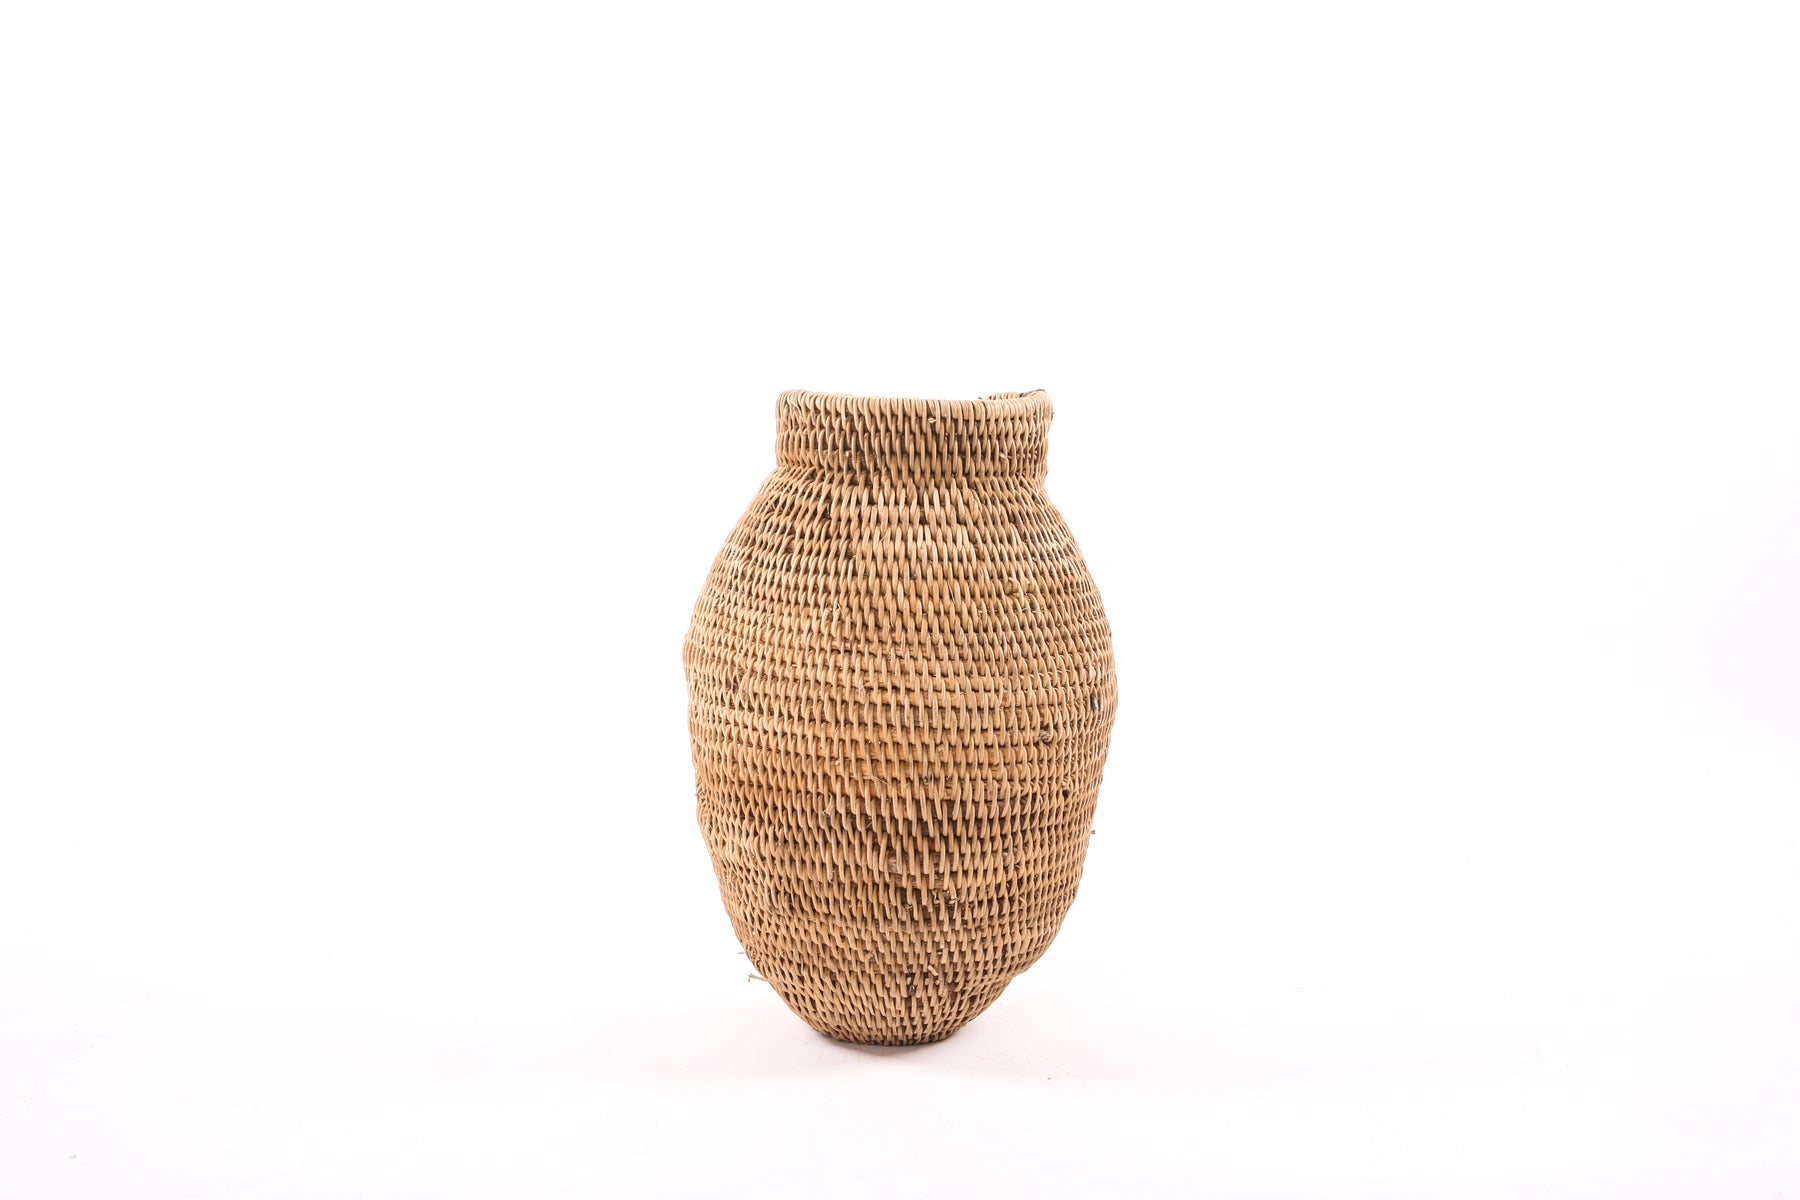 Buhera Basket - Small